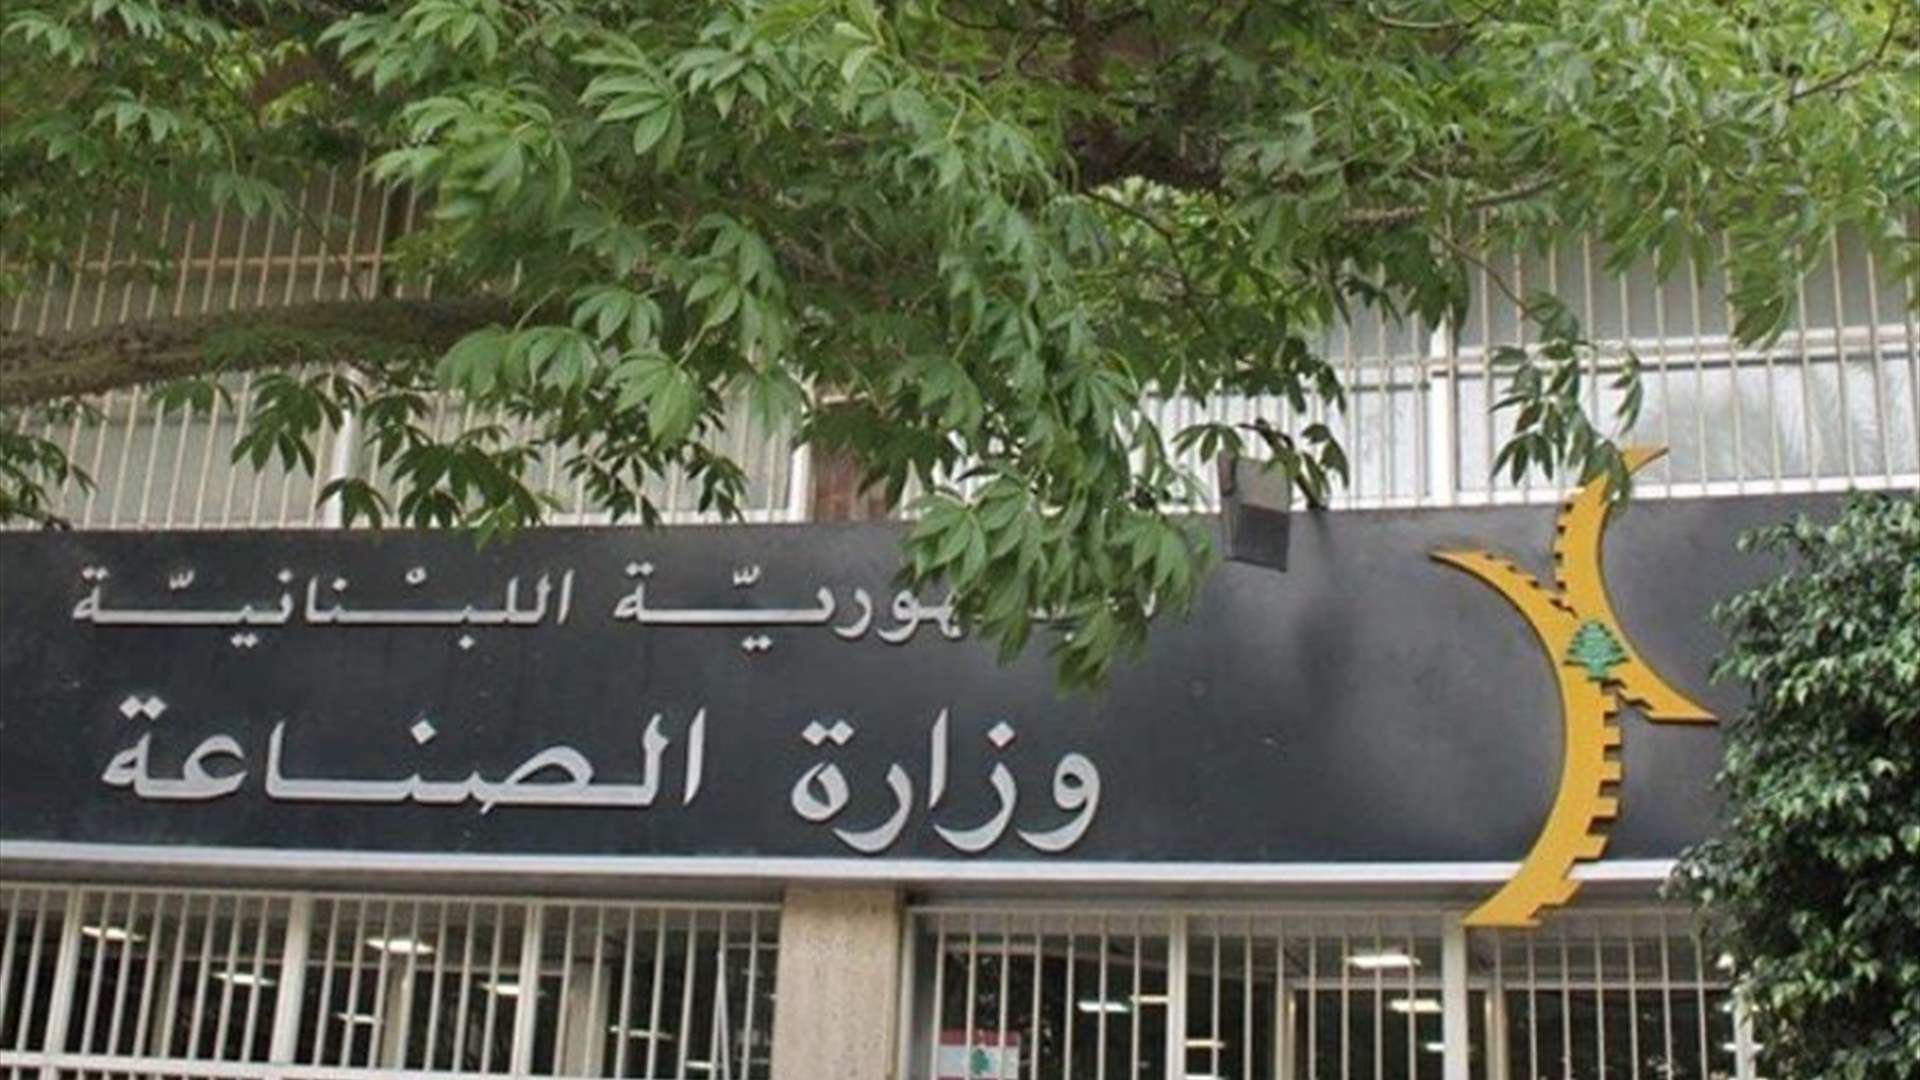 وزارة الصناعة تذكّر بعدم استخدام عمّال سوريين لا يحوزون أوراقًا قانونية